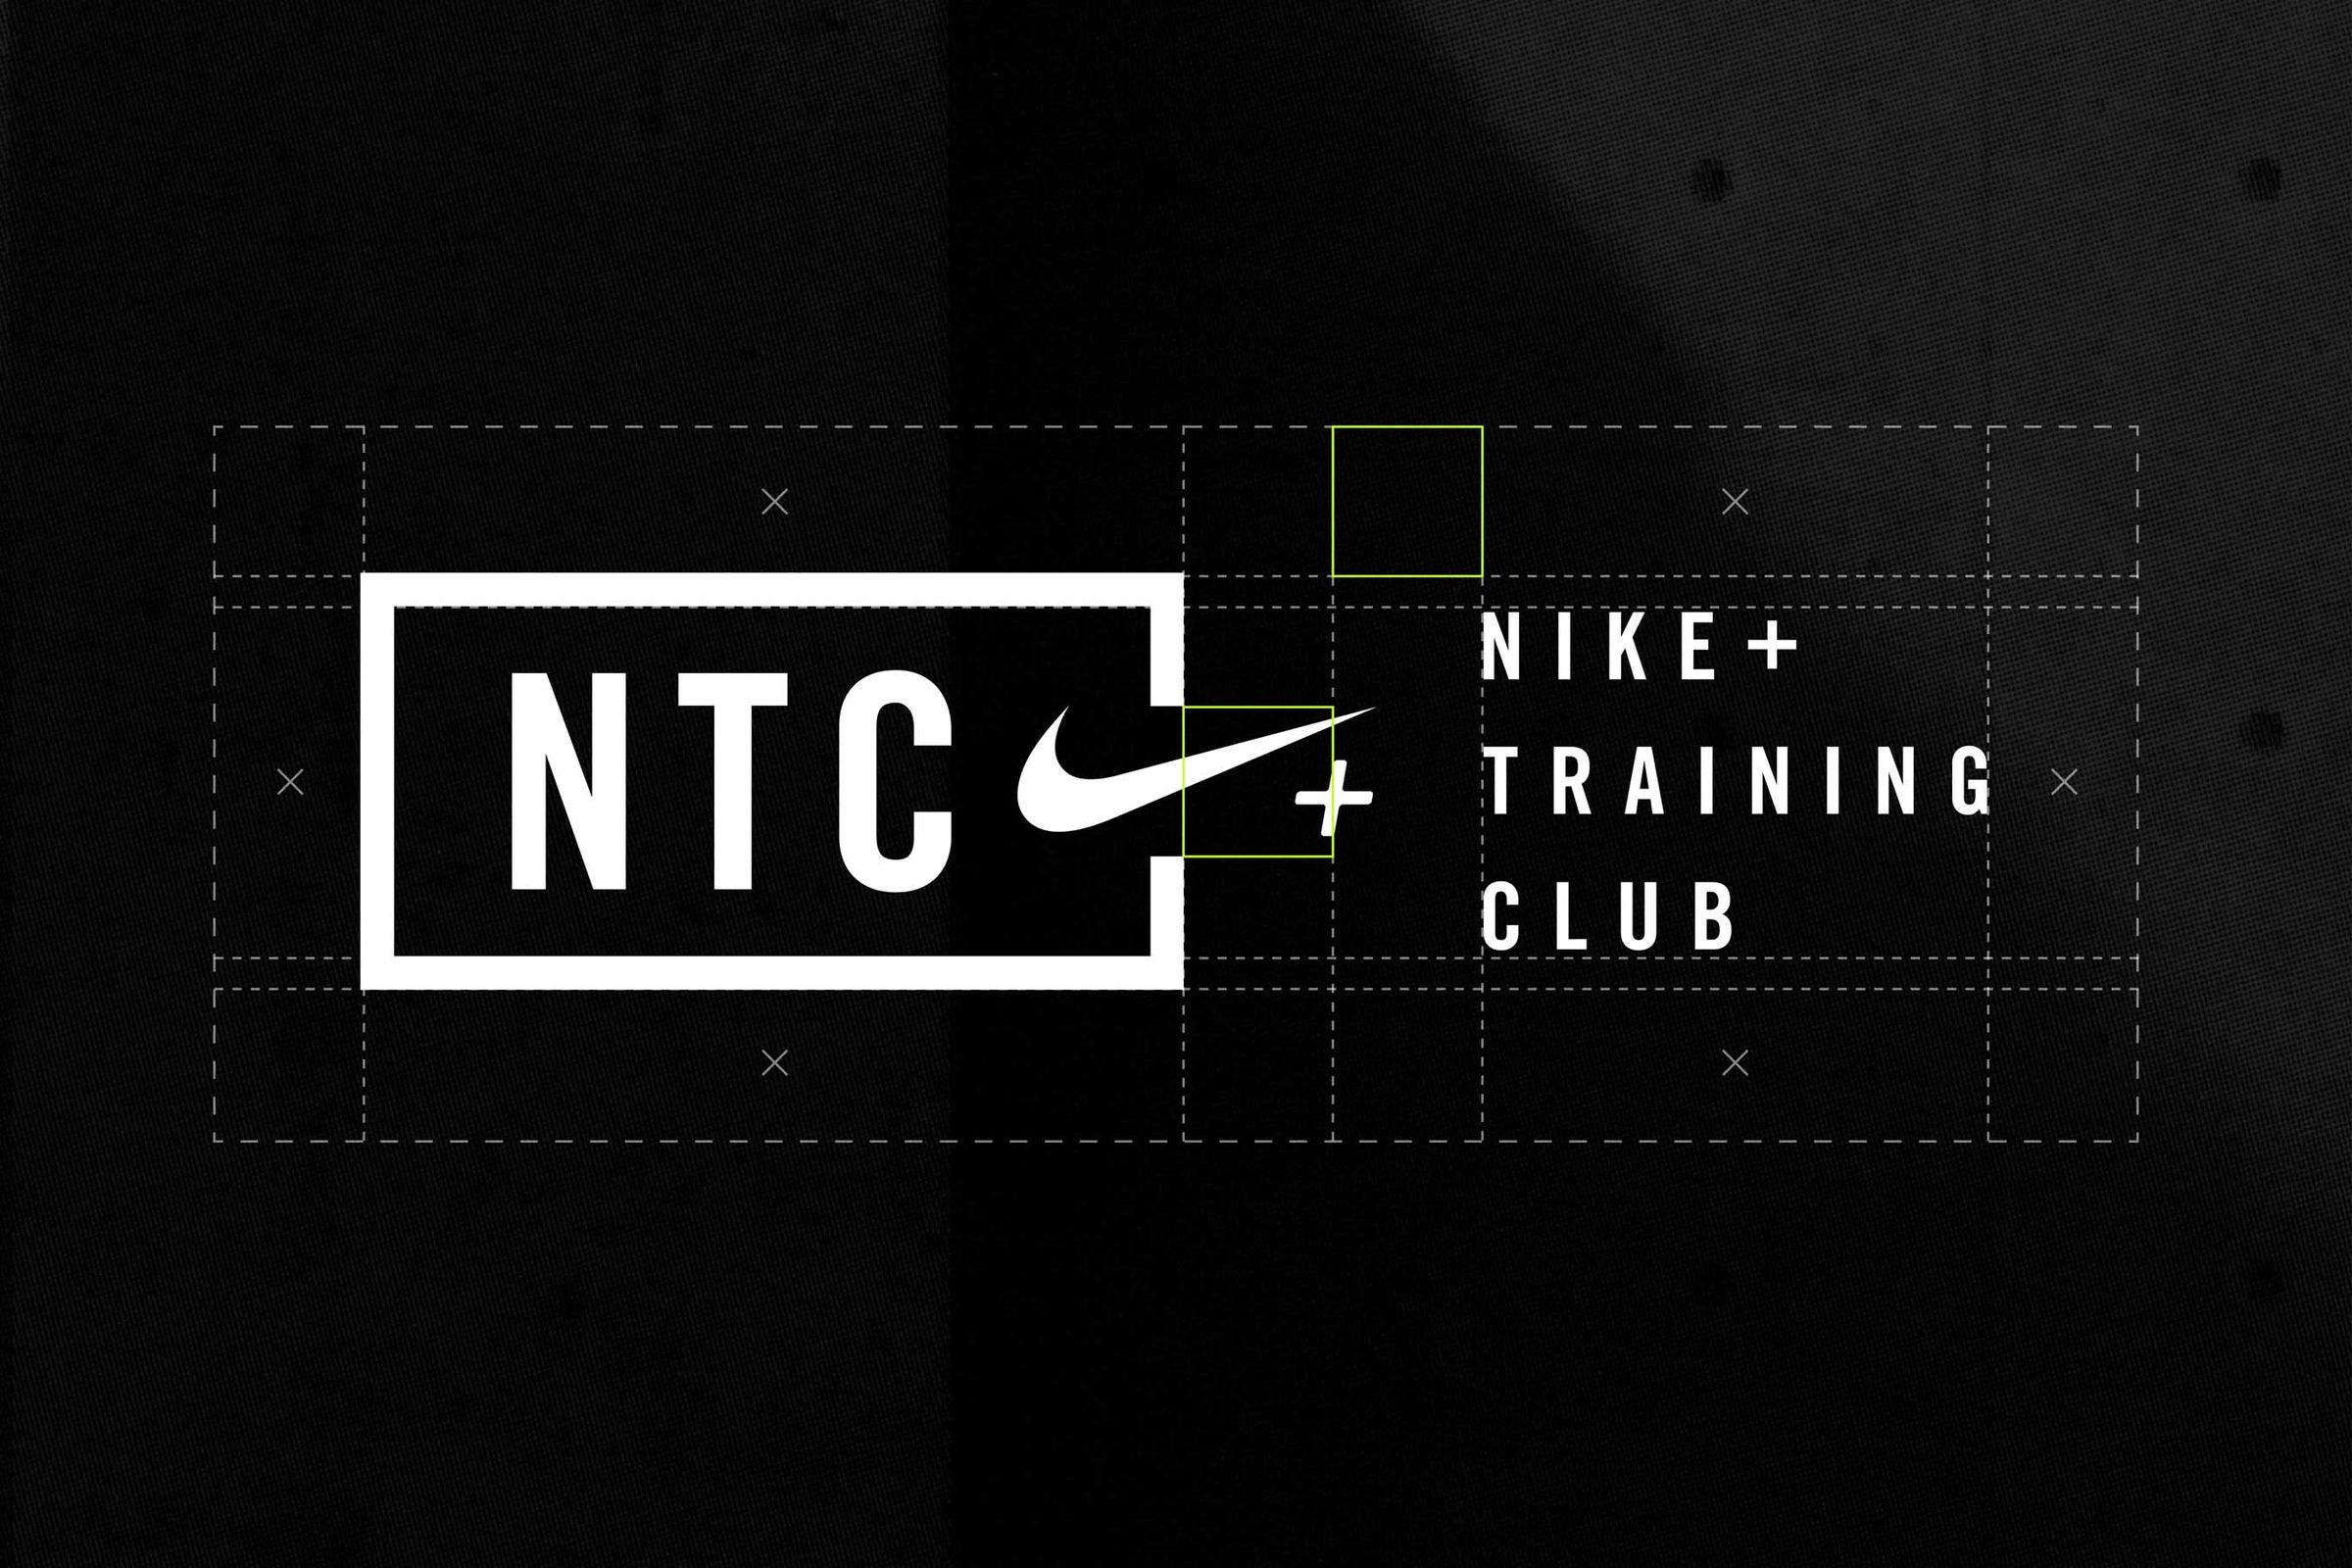 harina Lo dudo Estrictamente Nike NTC